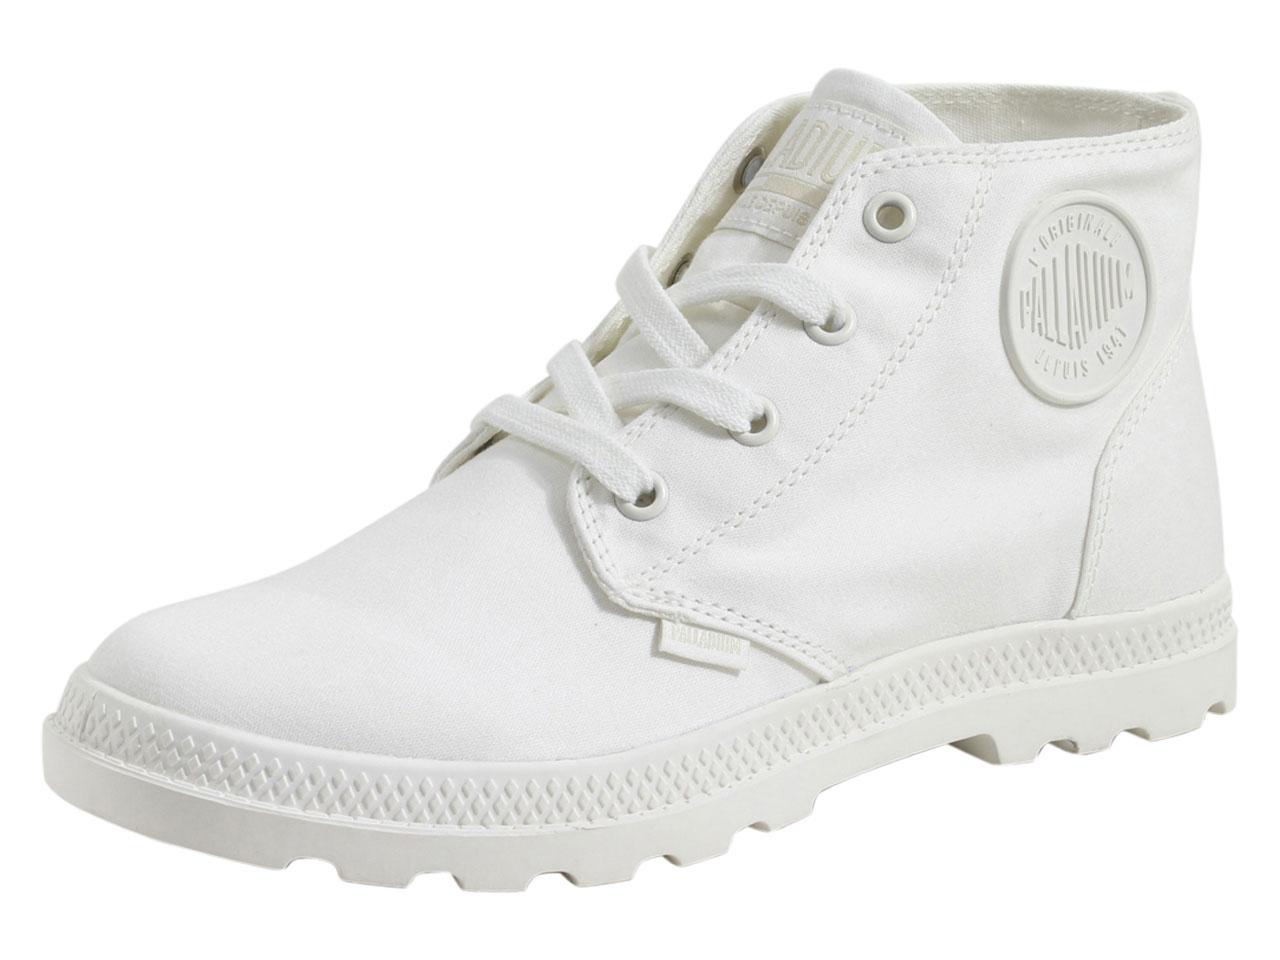 Palladium Women's Pampa Free Canvas Boots Shoes - White - 7.5 B(M) US